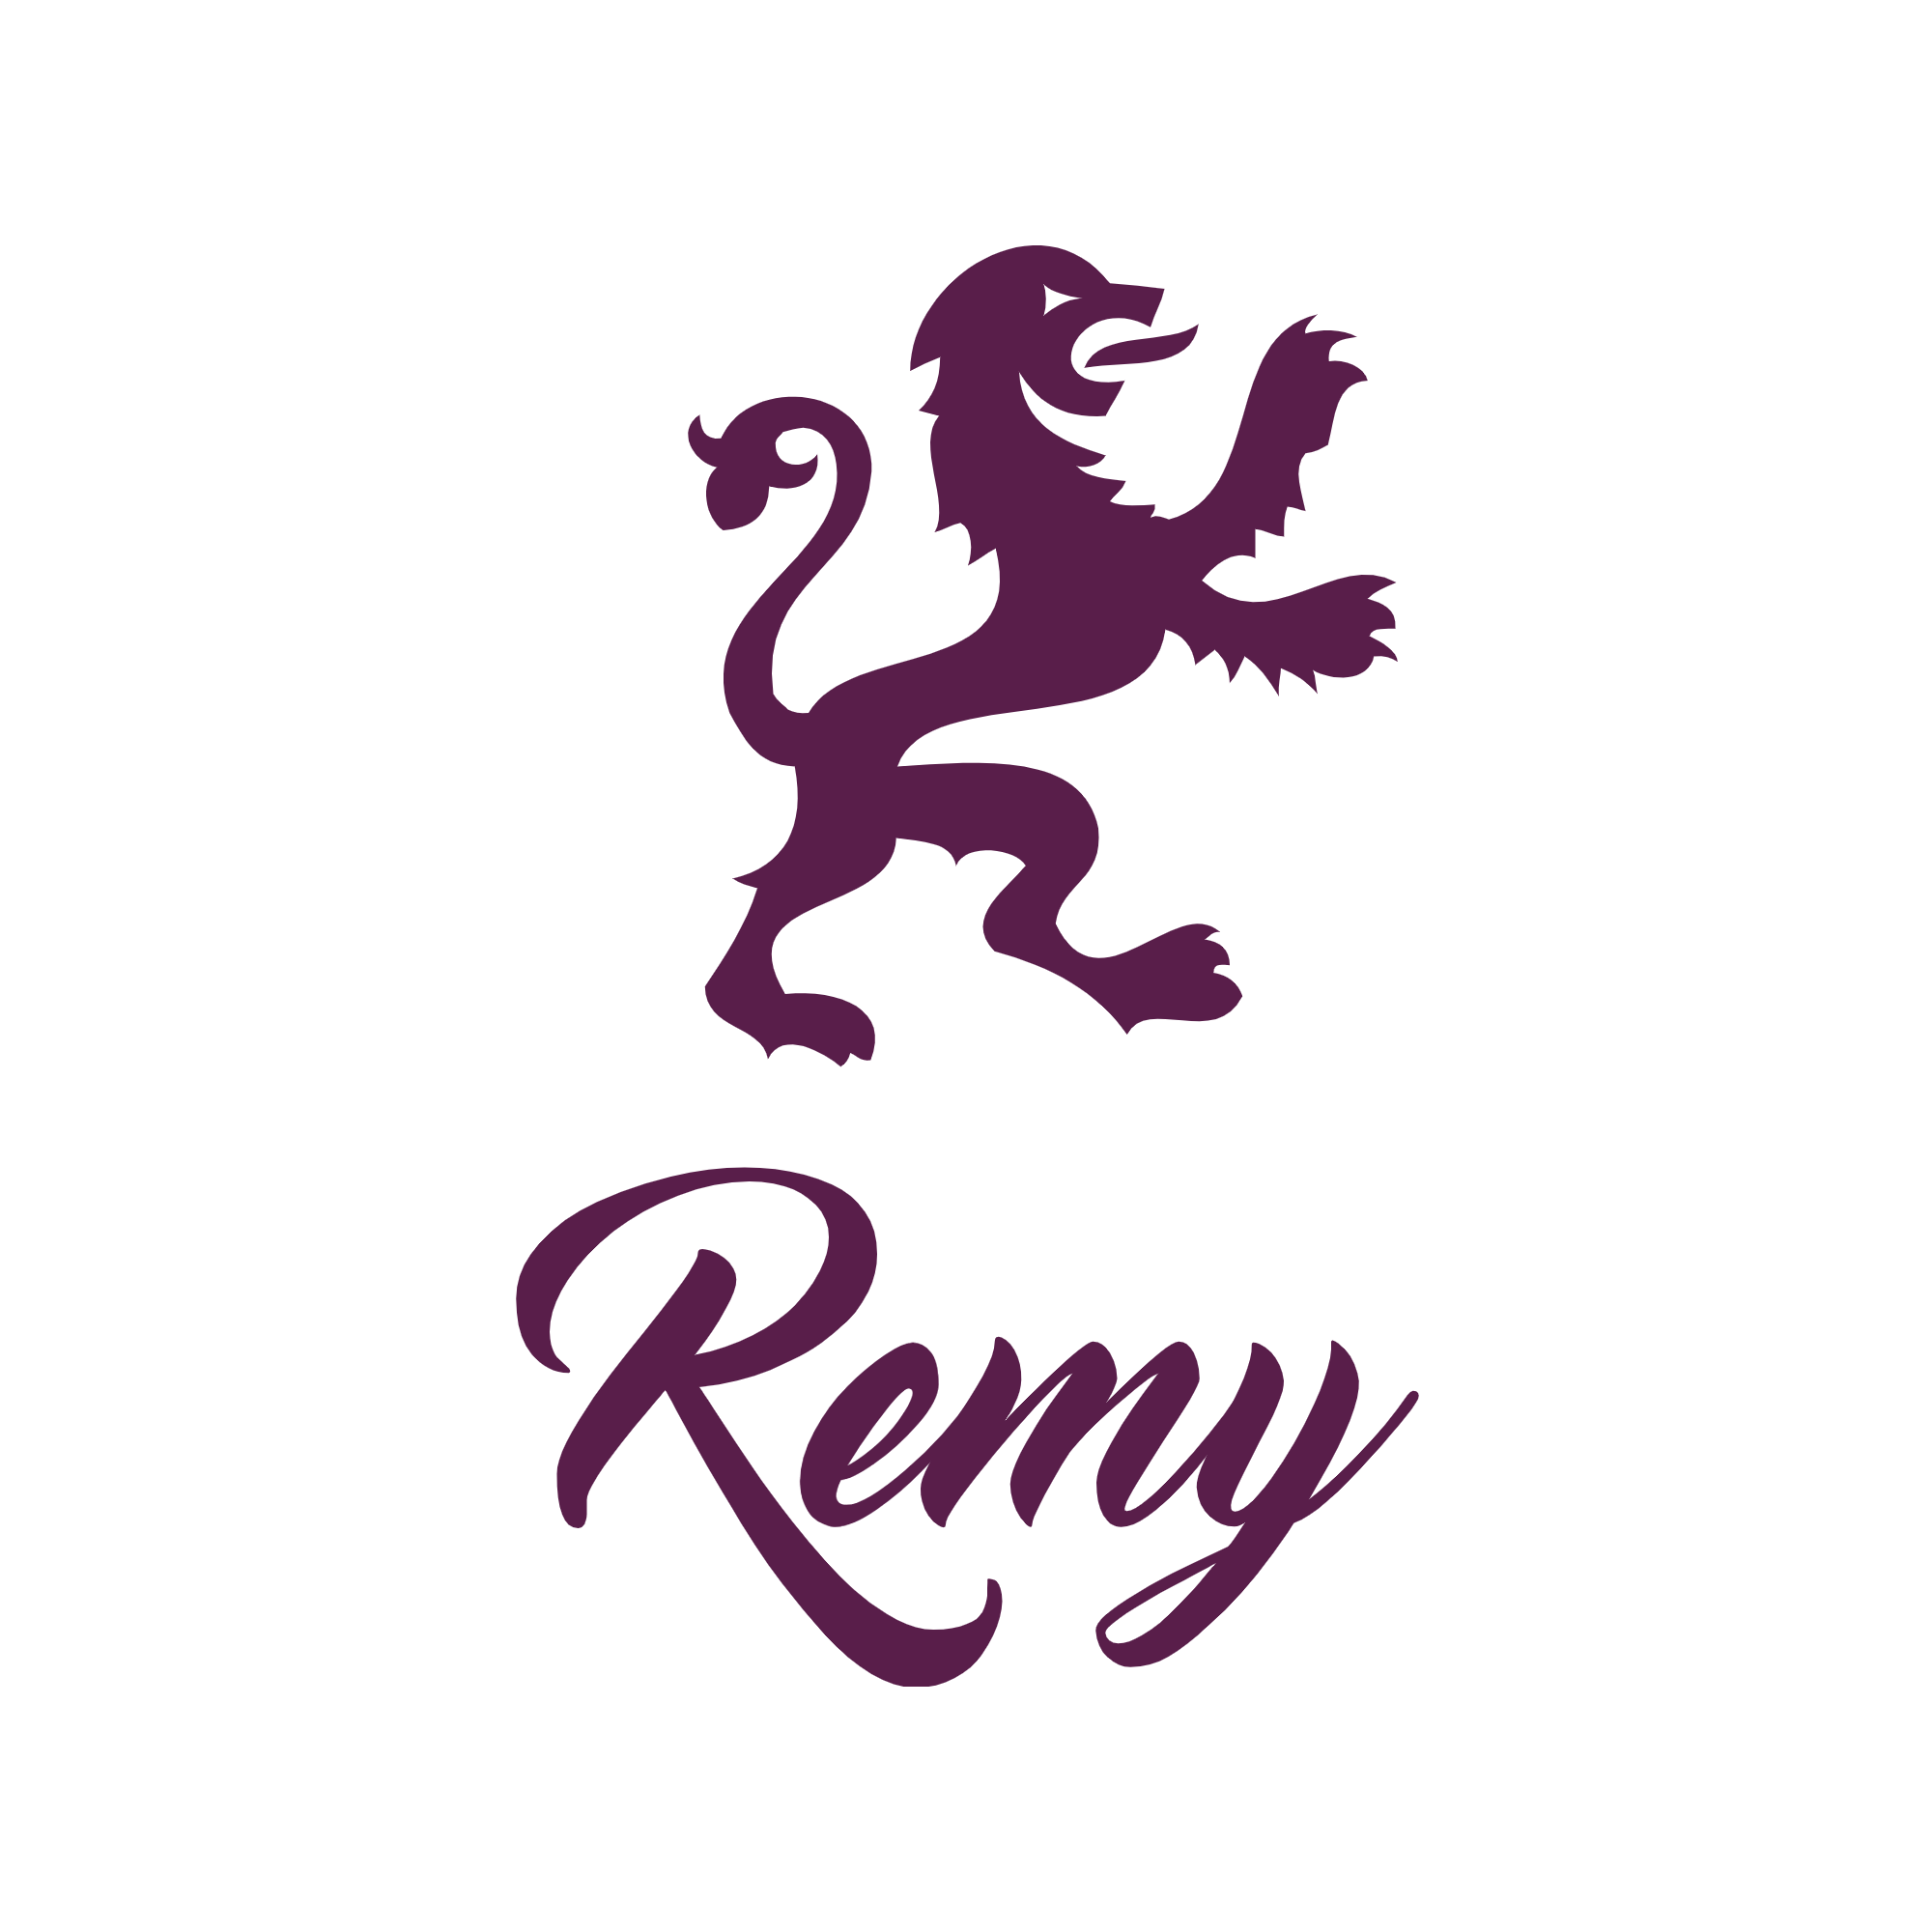 Remy - модный интернет-магазин одежды, обуви и аксессуаров.